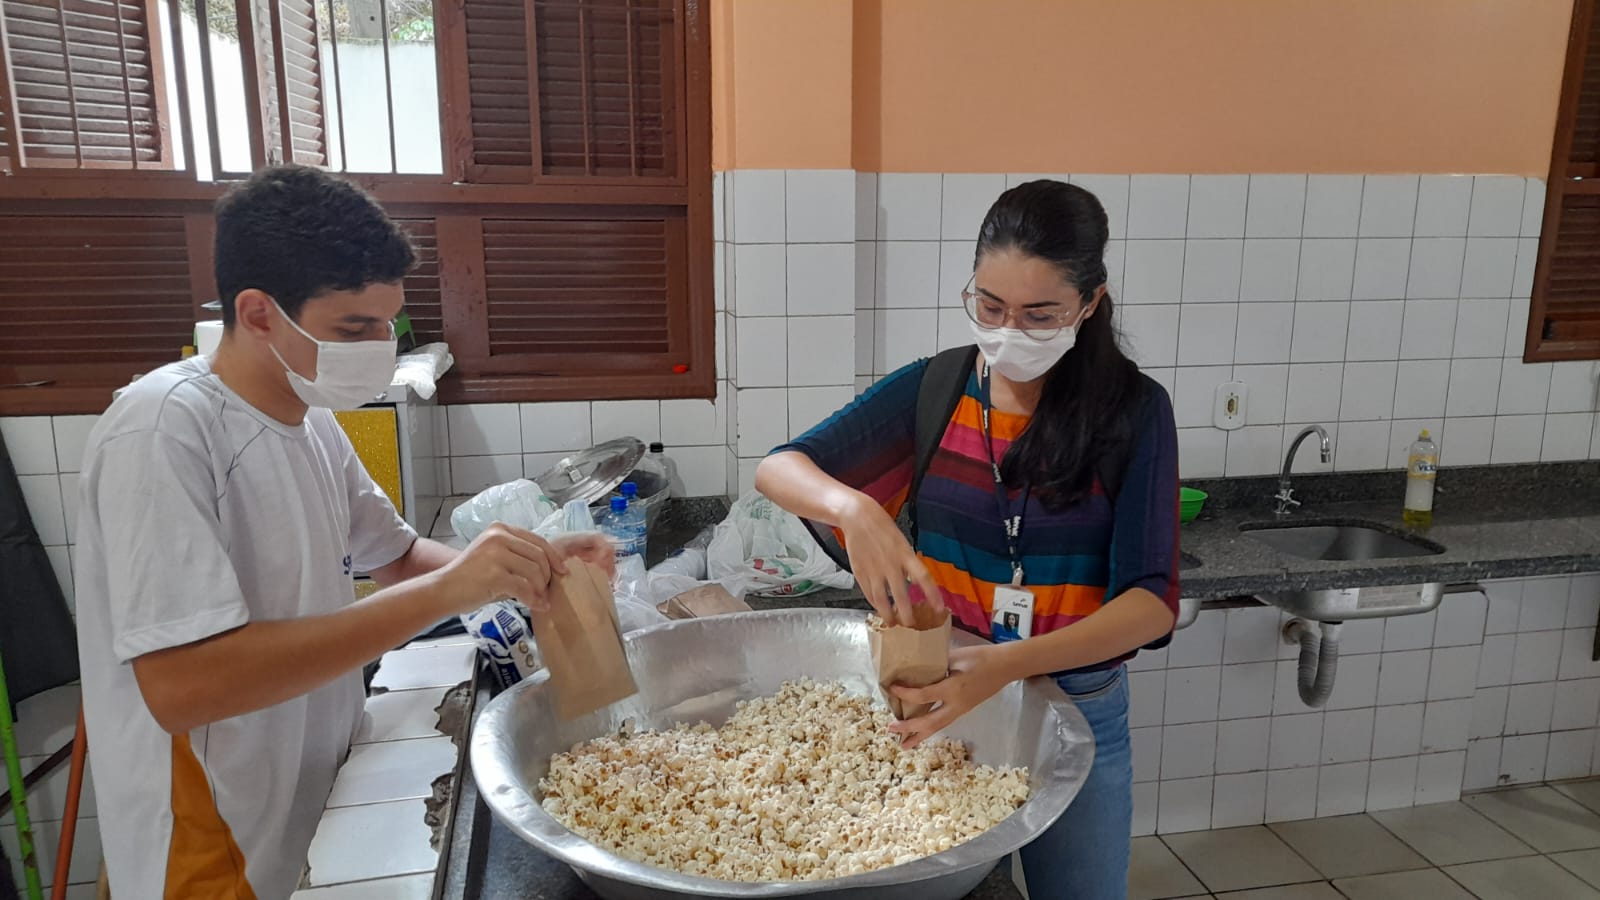 No abrigo, Roberto e outra voluntária preparam pipoca para as crianças | Imagem: Arquivo pessoal, utilizada com permissão